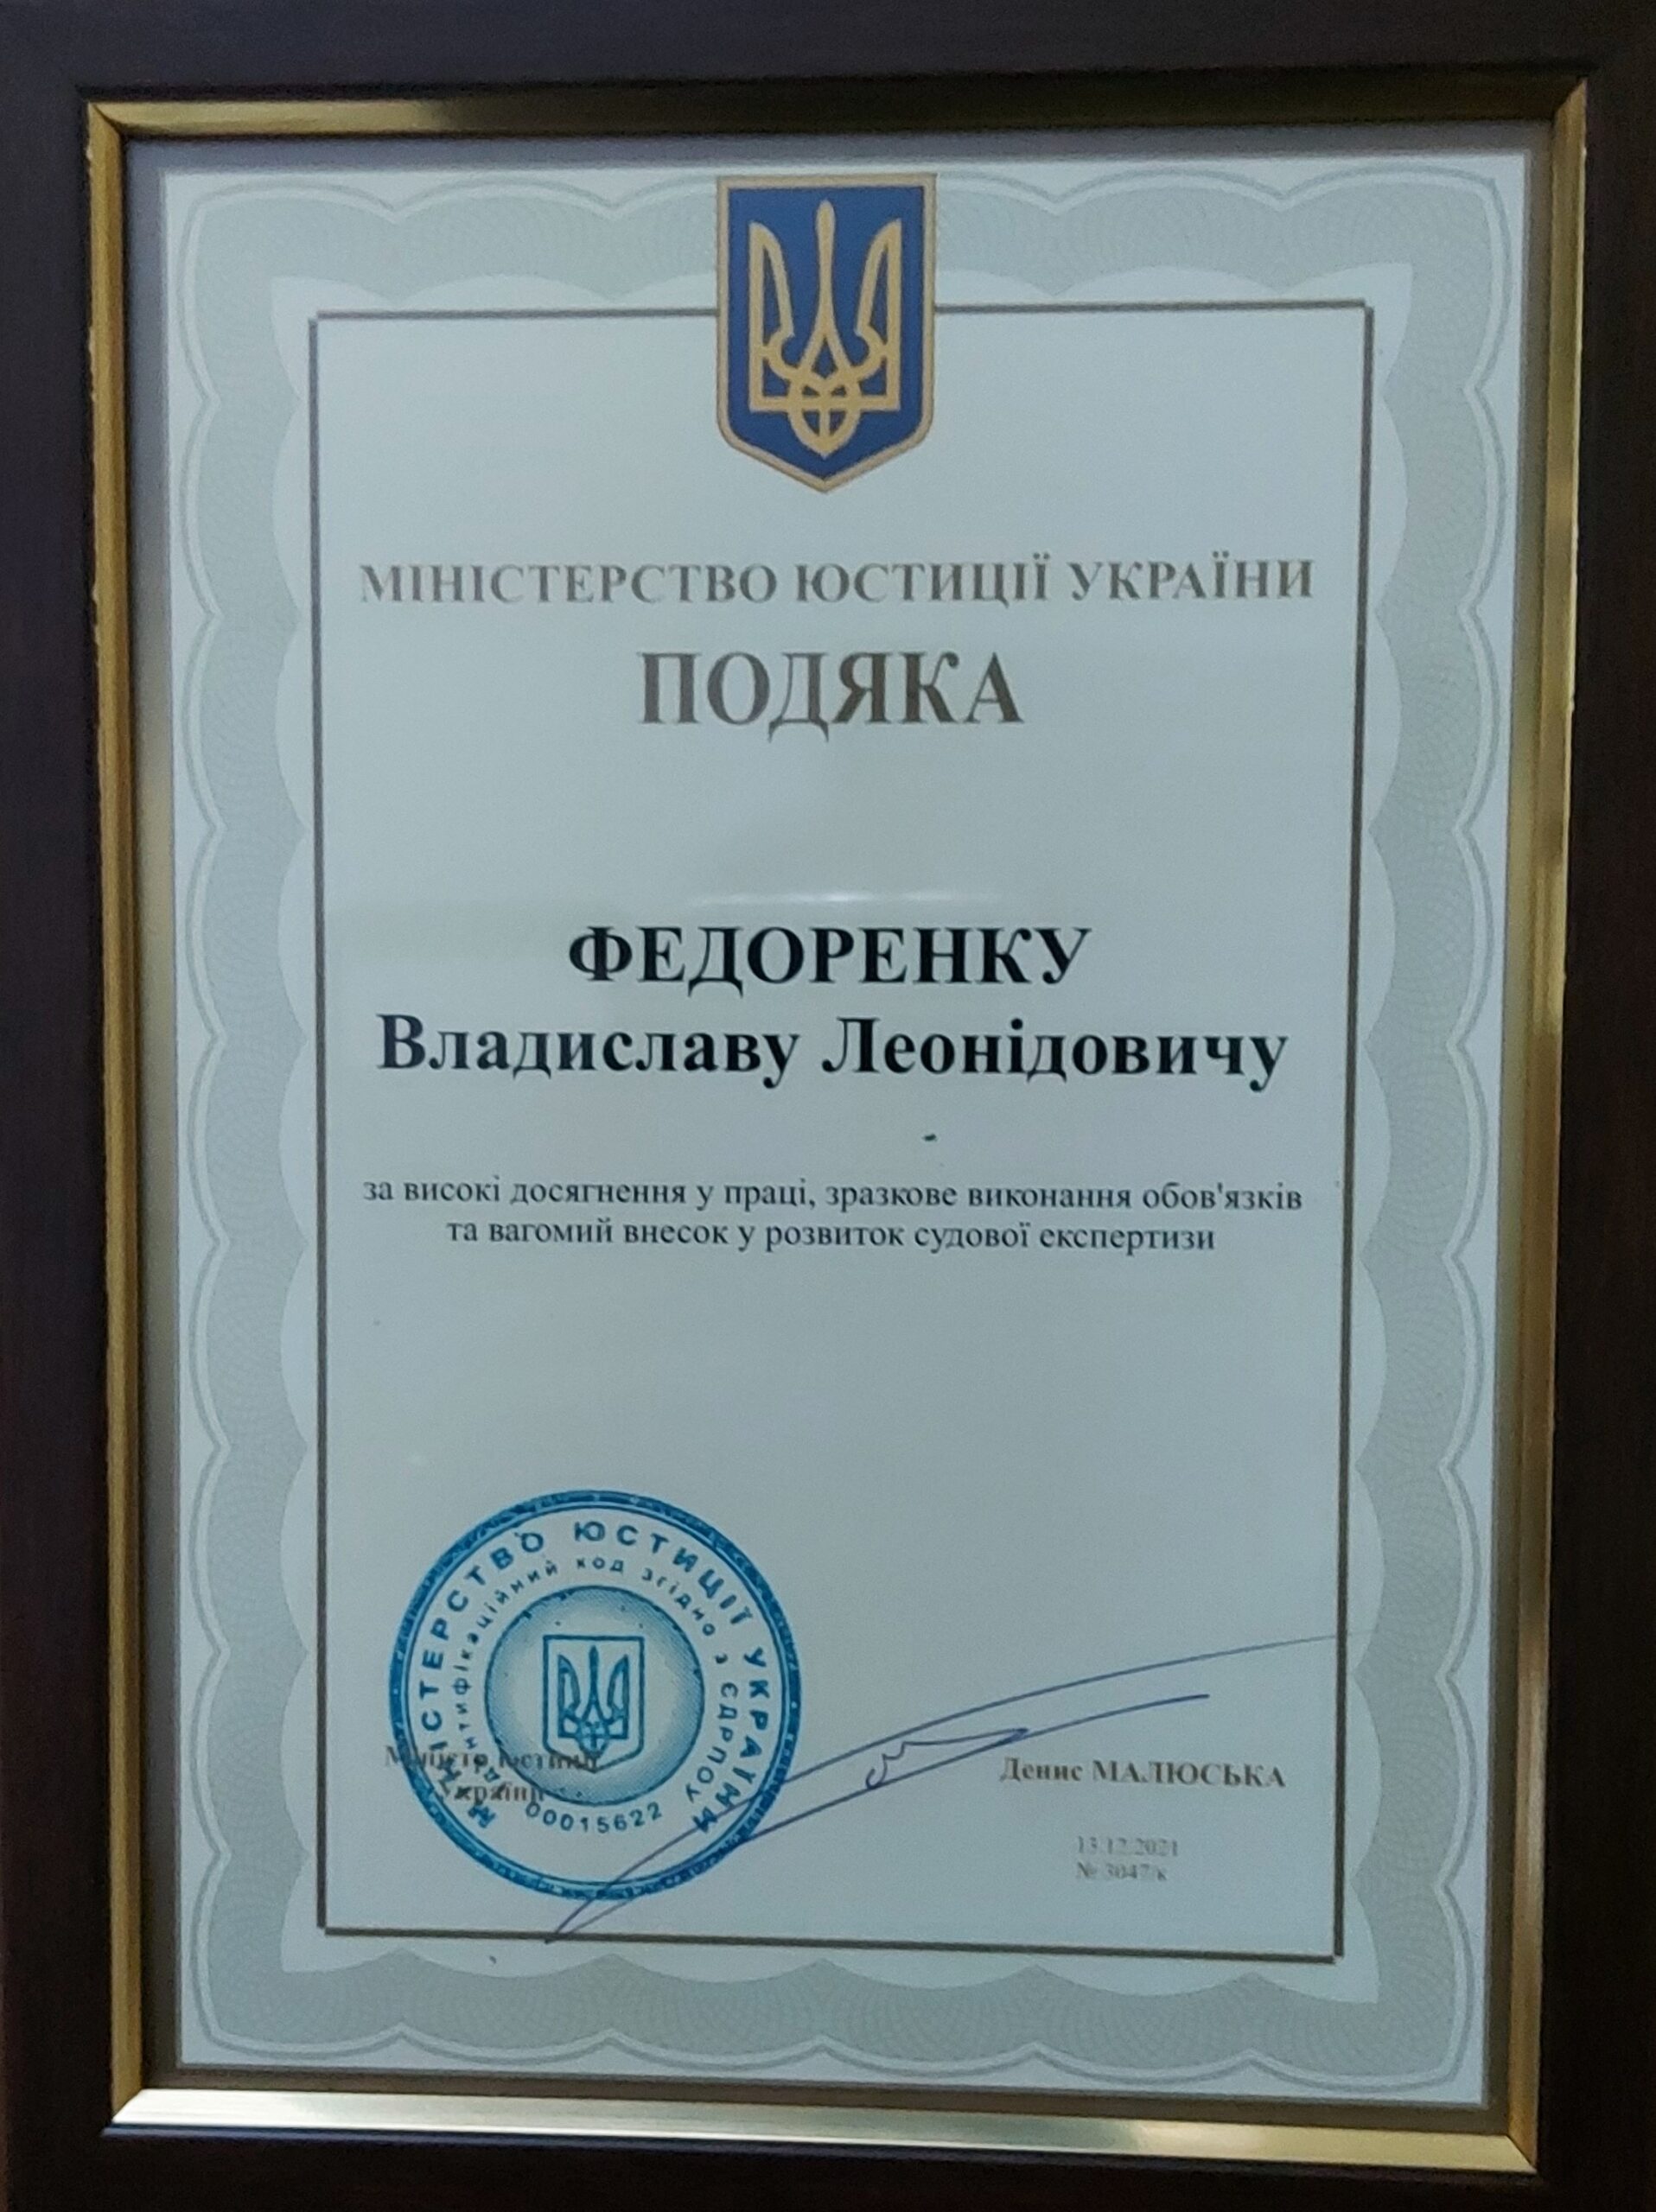 Нагородження керівника НДЦСЕ з питань інтелектуальної власності відзнакою Міністерства юстиції України